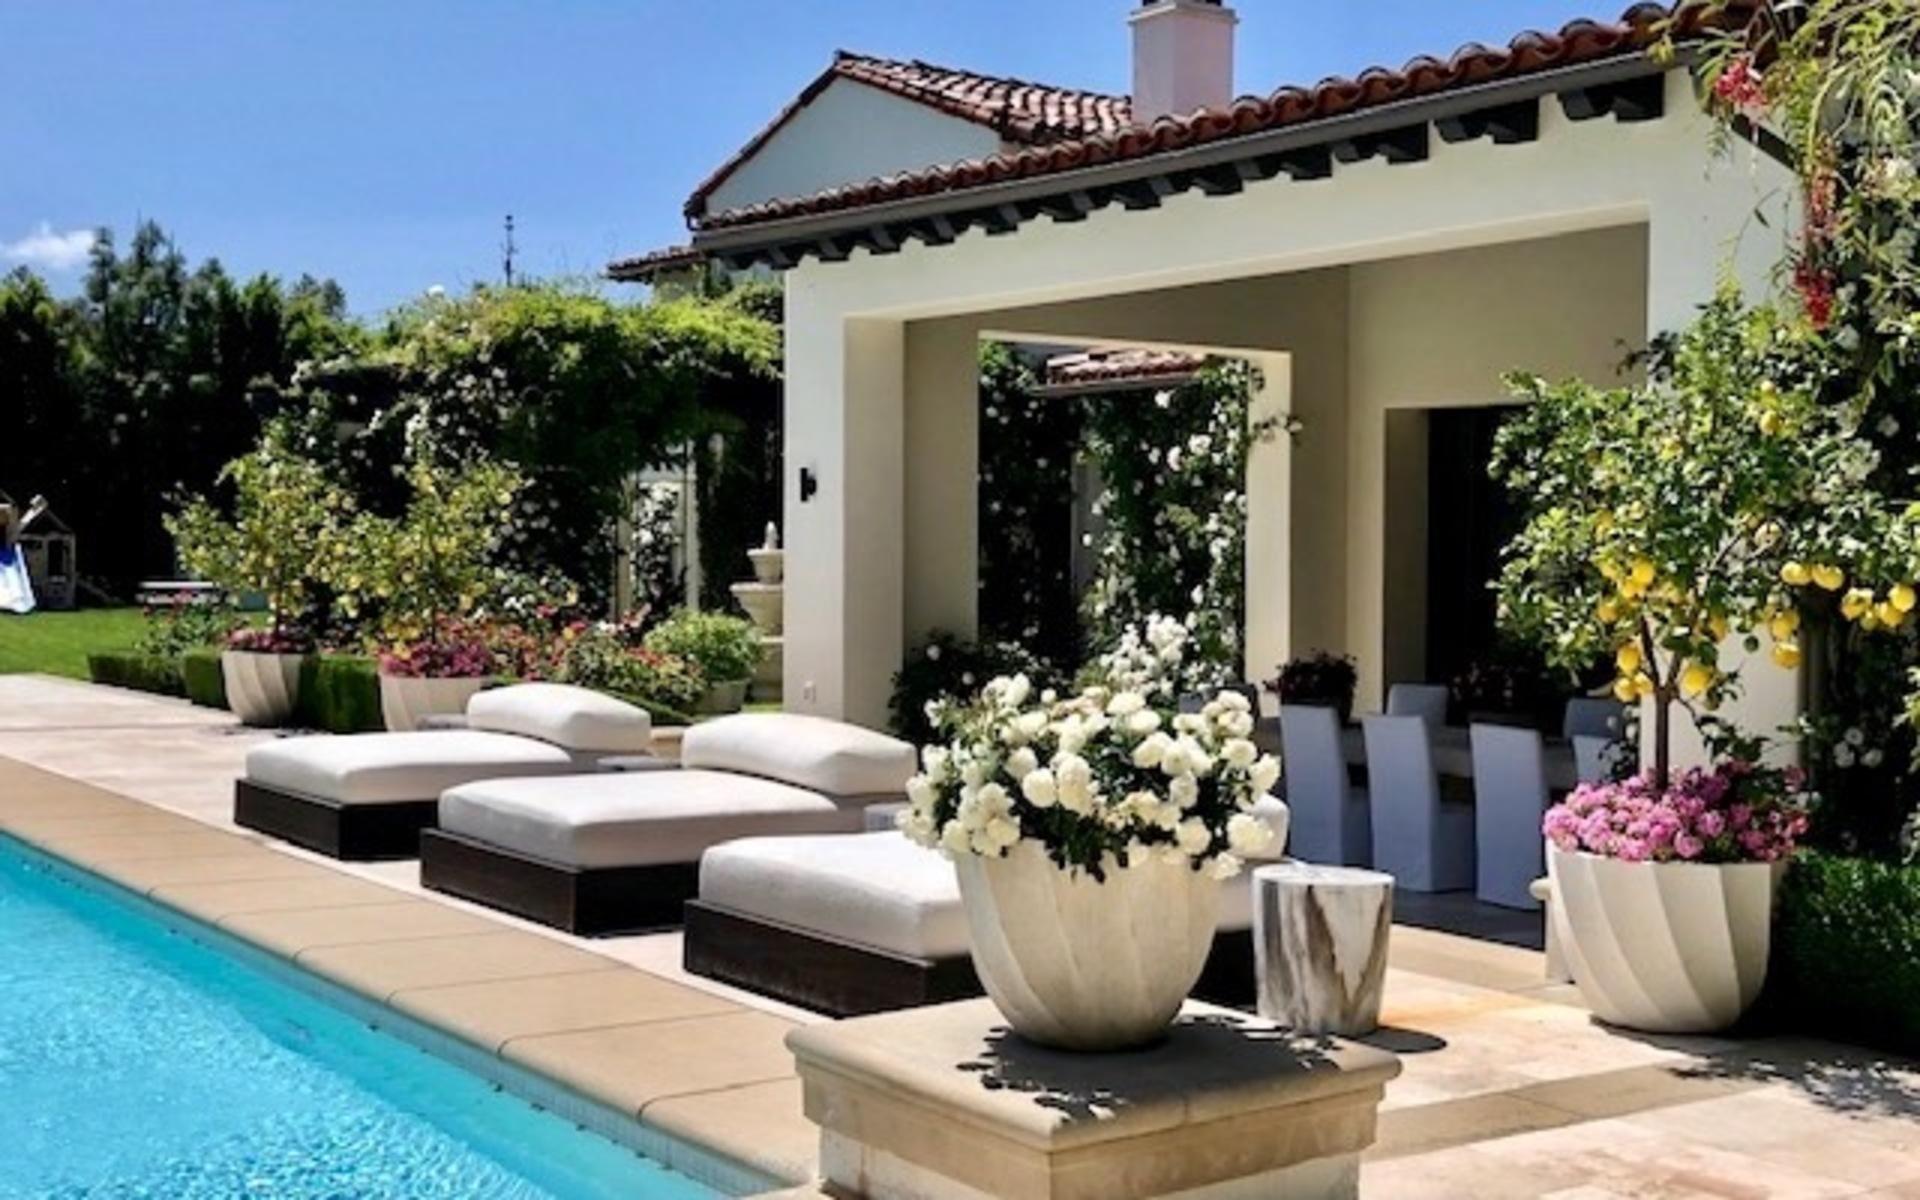 Khloé Kardashian köpte huset i Calabasas när hon skiljde sig från basketstjärnan Lamar Odom.